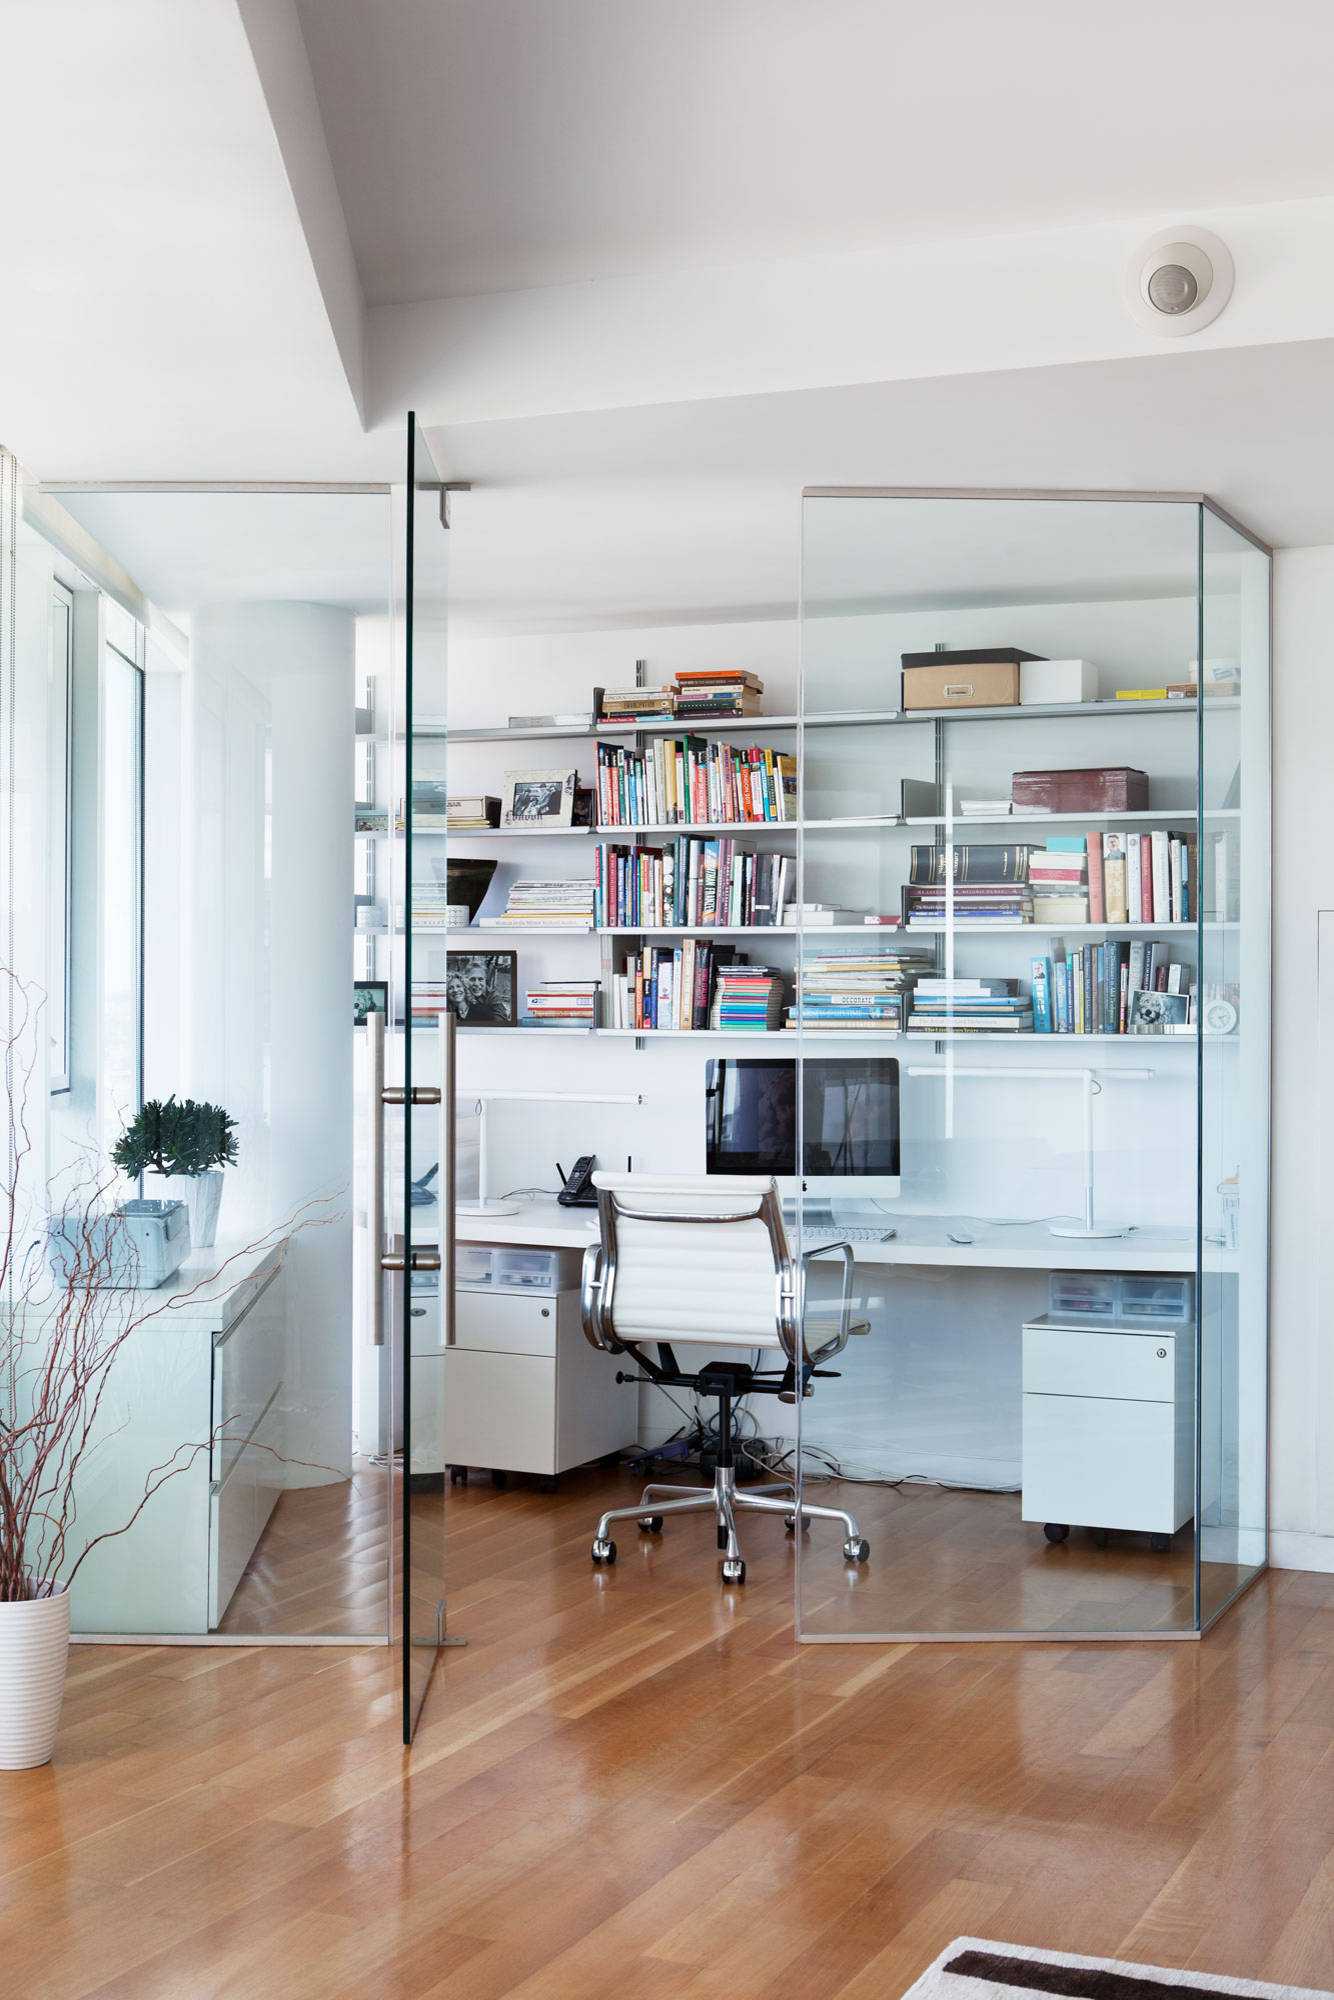 Стеклянные перегородки в квартире. фото ⋆ новые идеи 2020 ⋆ дизайн комнат, советы экспертов